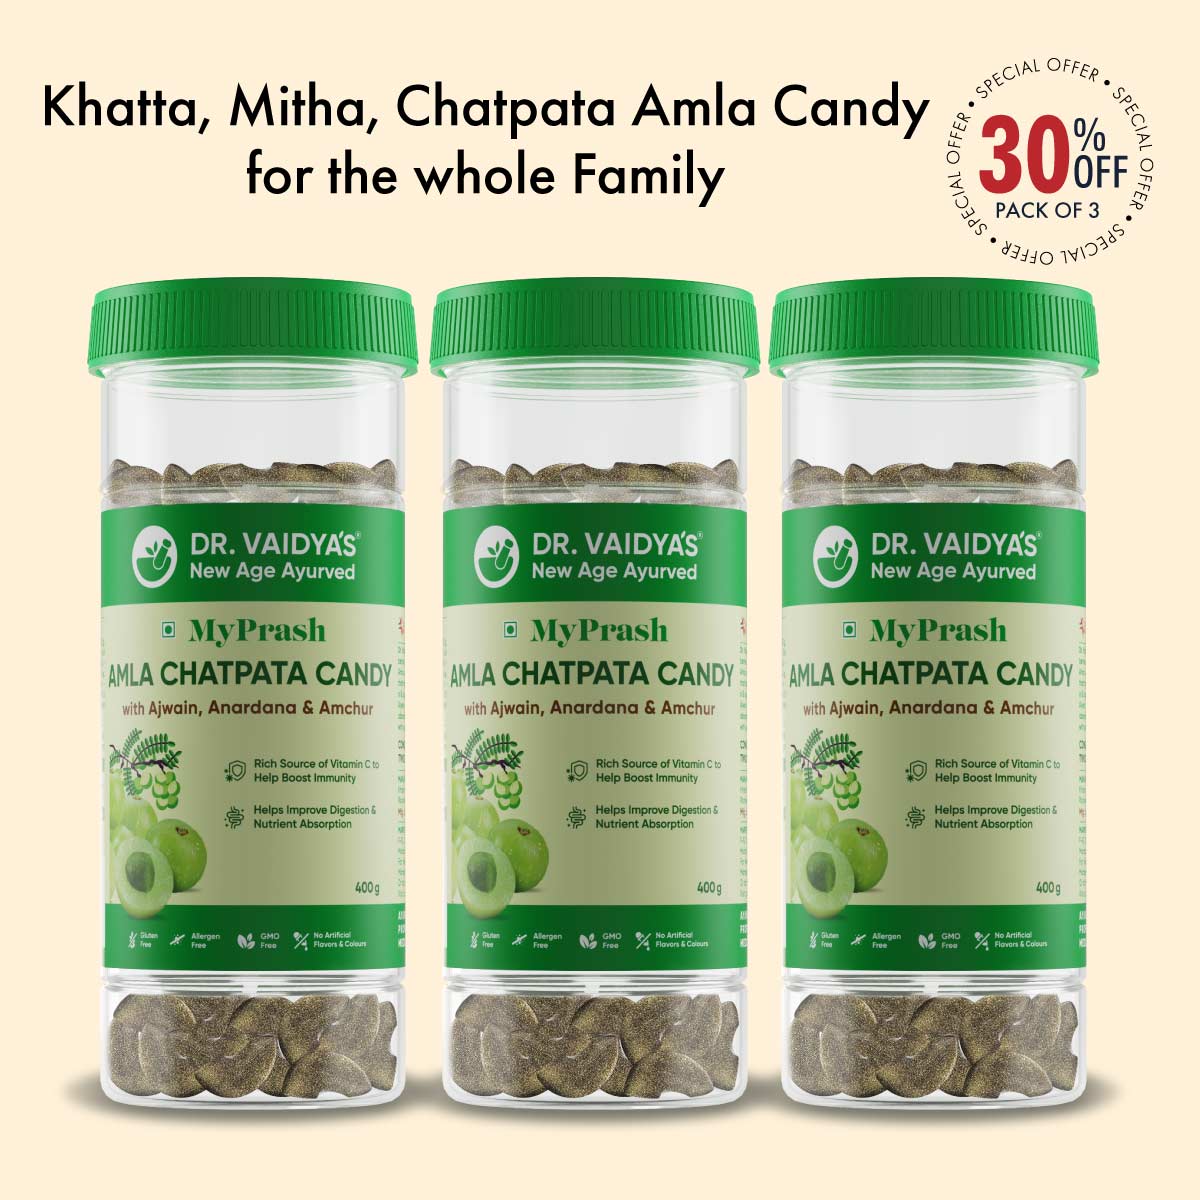 MyPrash Amla Chatpata Candy: Amla Candy That Helps Boost Immunity & Energy Levels